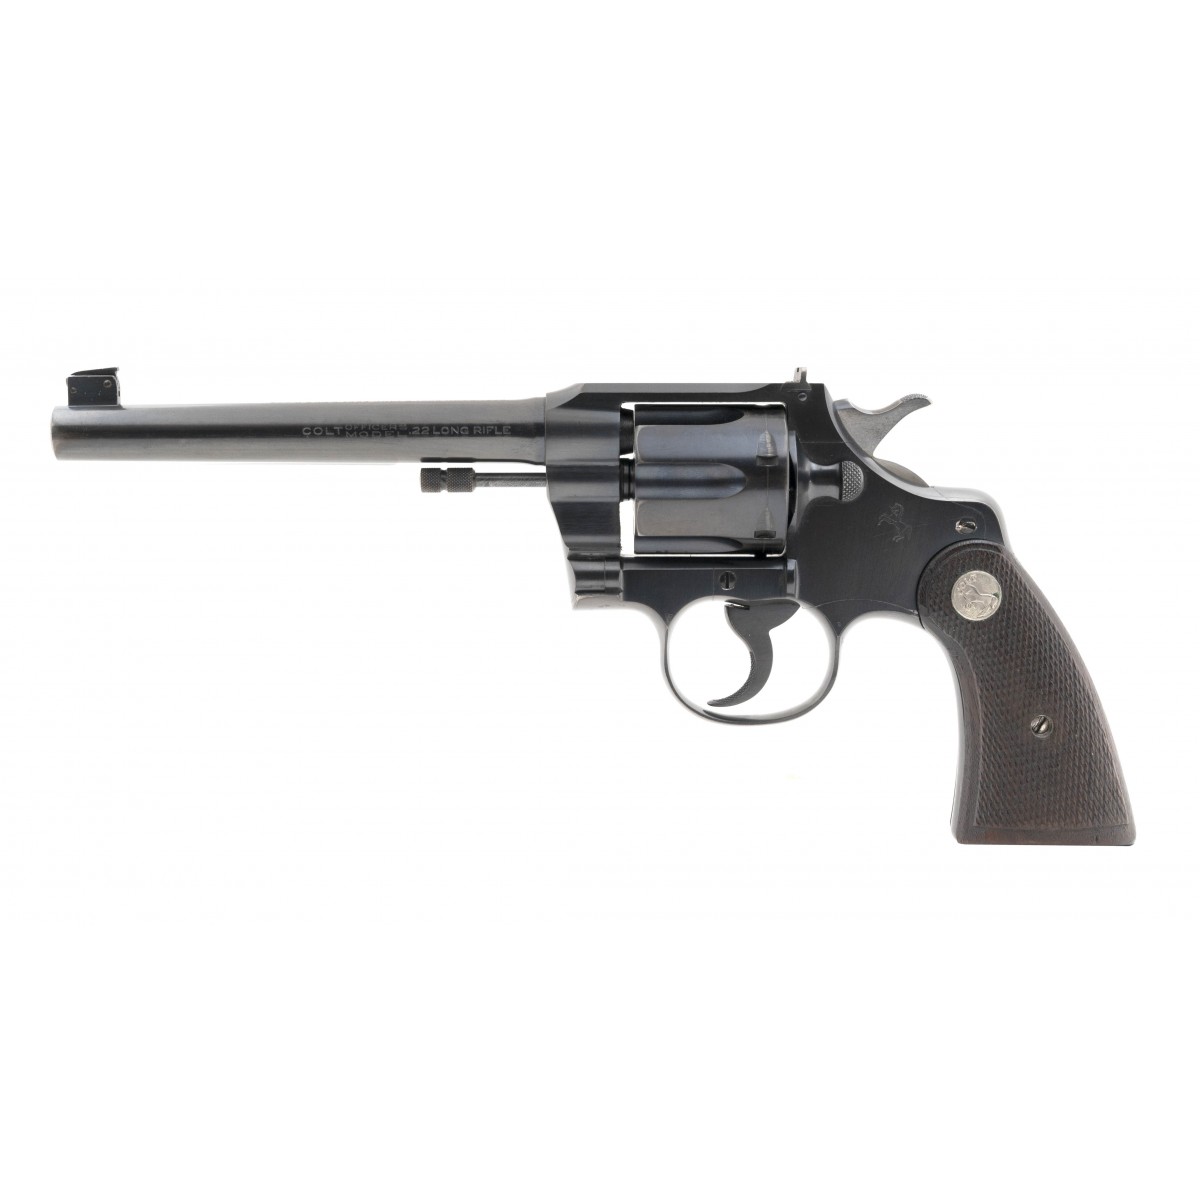 Colt Officers Model Target 22LR caliber revolver for sale.